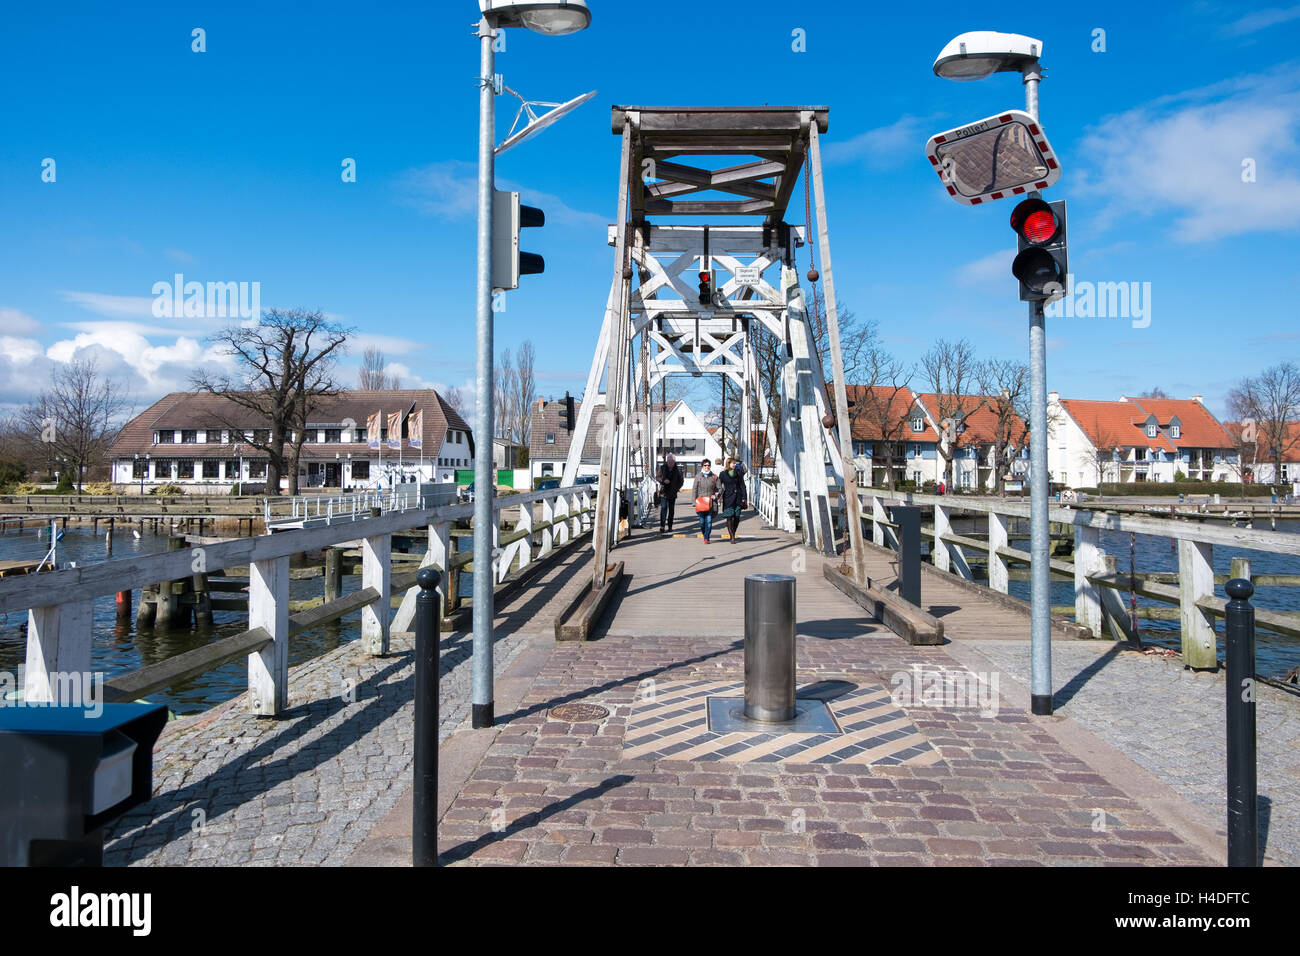 WIECK, Deutschland - 2. April 2015: Historische Klappbrücke in Wieck (Greifswald), Mecklenburg-Vorpommern, Deutschland Stockfoto